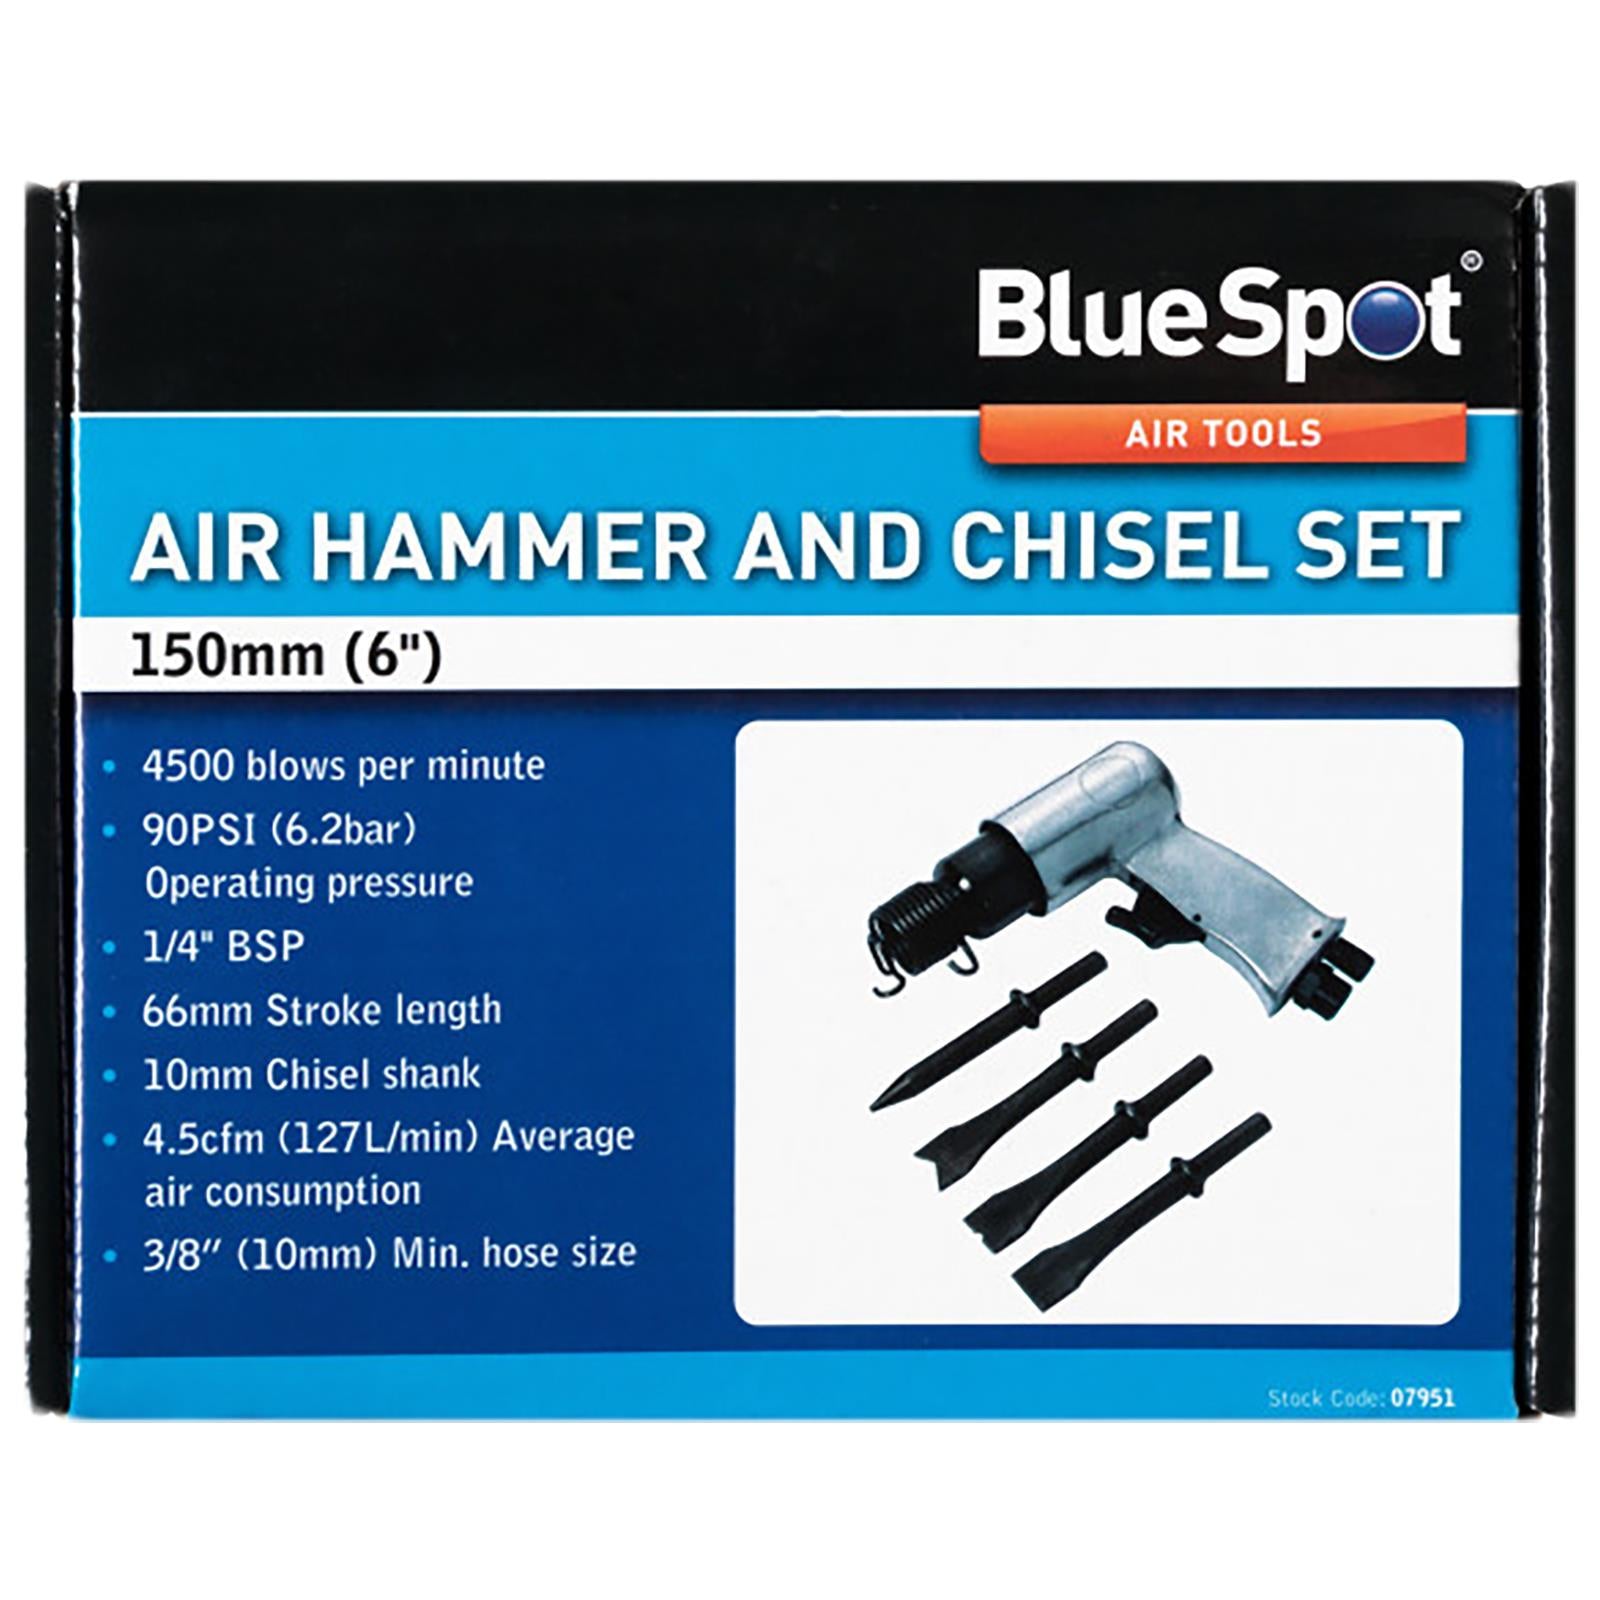 BlueSpot Air Hammer and Chisel Set 1/4" BSP